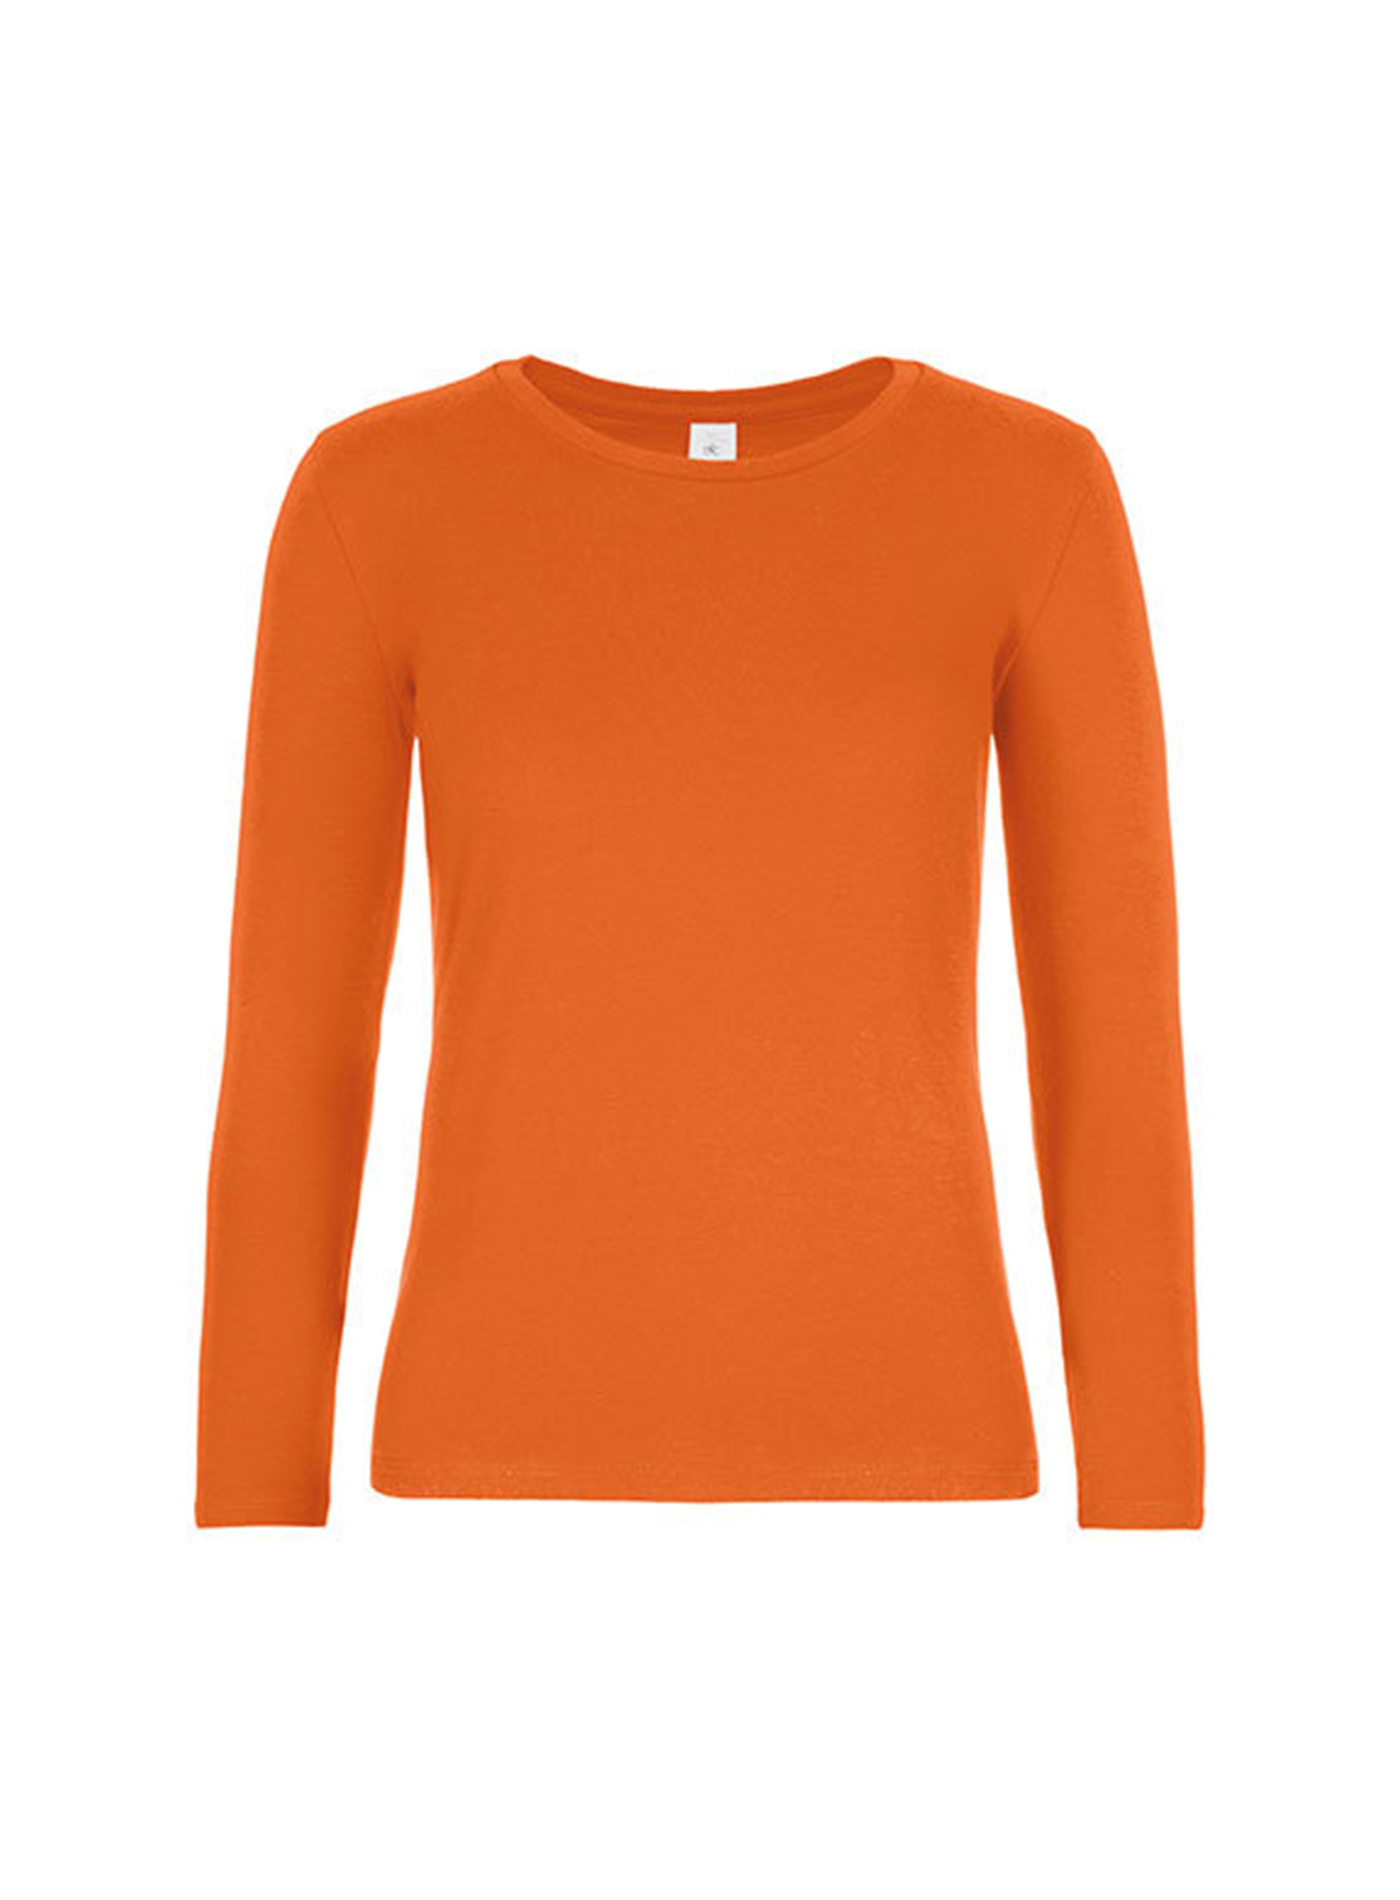 Dámské tričko s dlouhým rukávem B&C Collection - Oranžová M